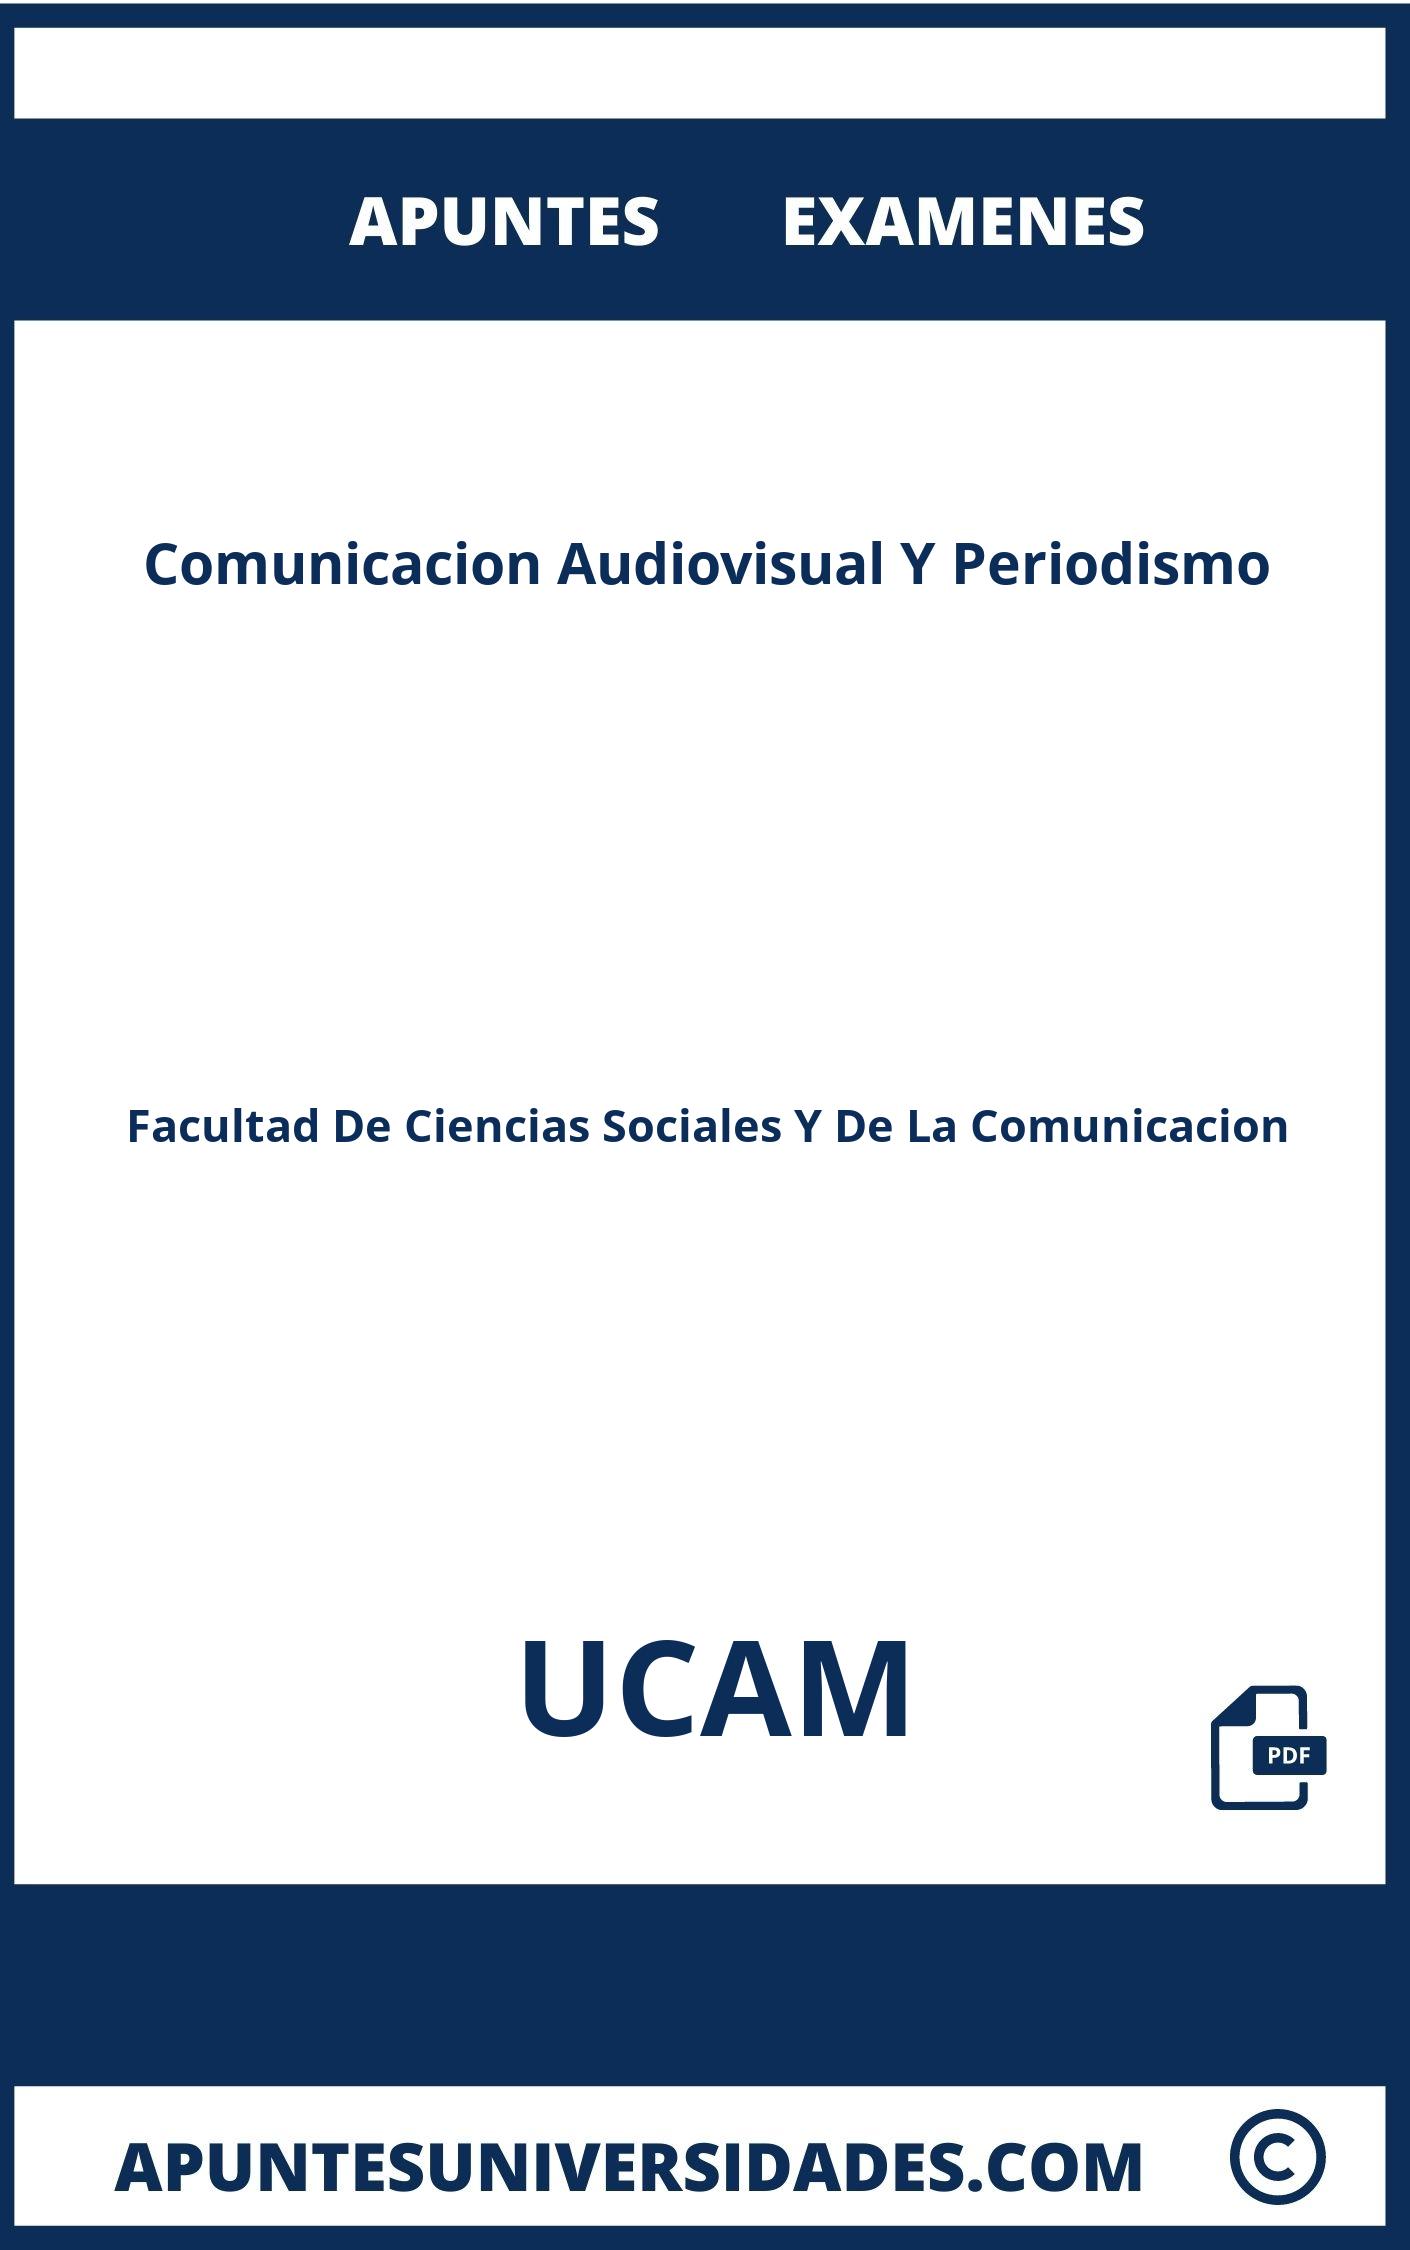 Examenes y Apuntes Comunicacion Audiovisual Y Periodismo UCAM